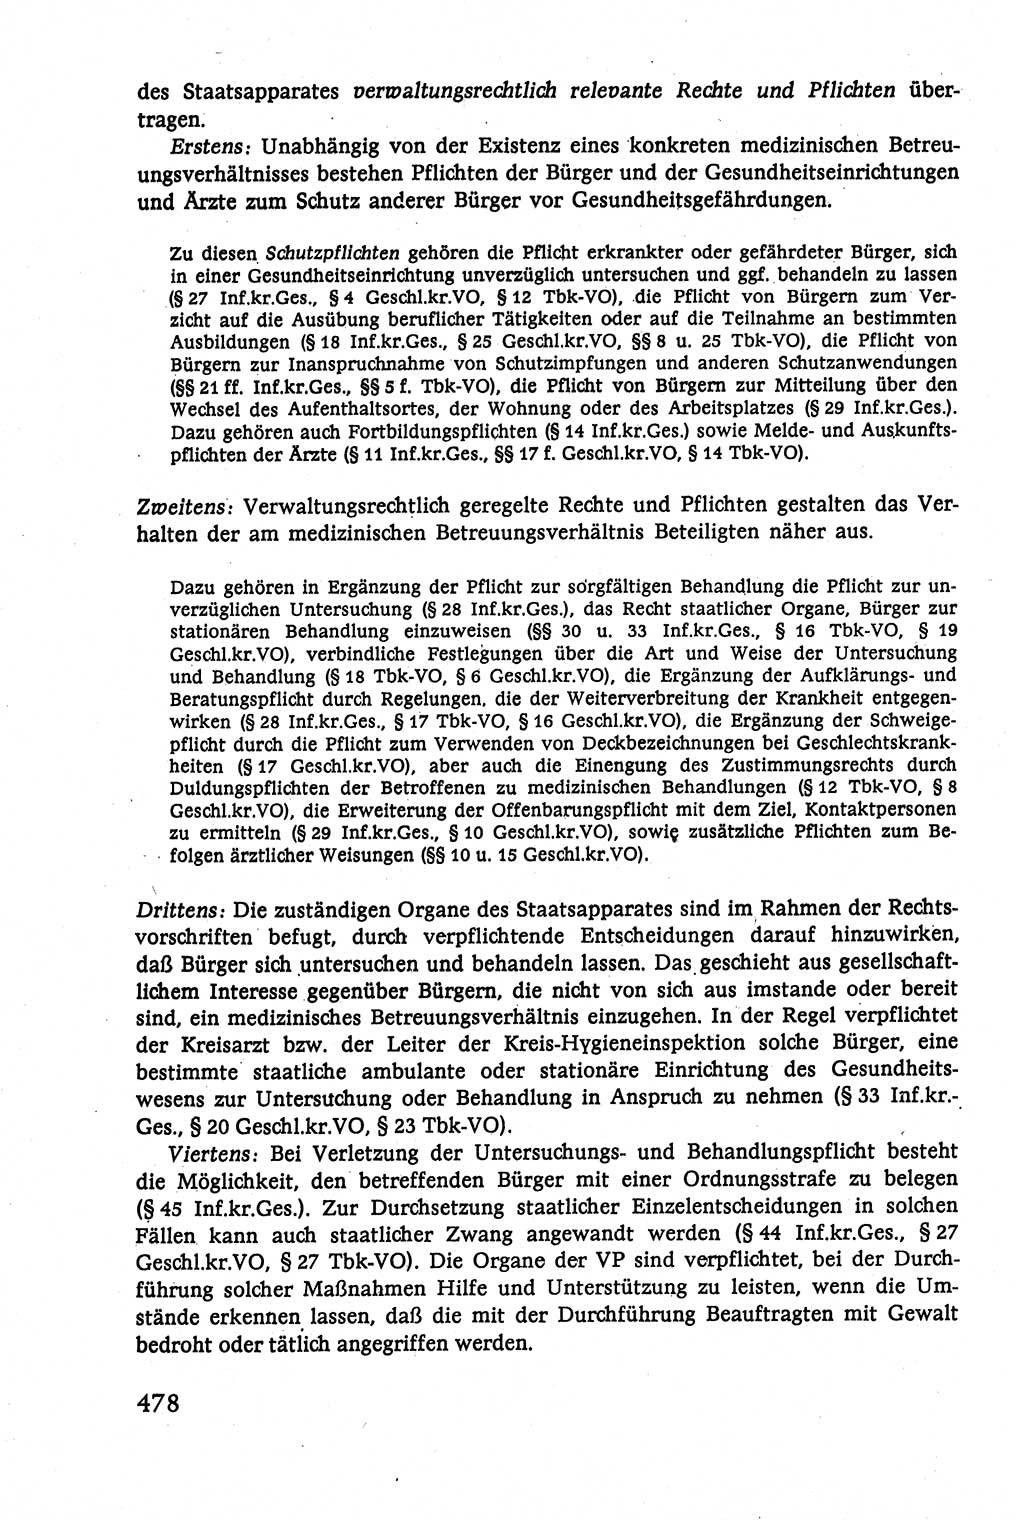 Verwaltungsrecht [Deutsche Demokratische Republik (DDR)], Lehrbuch 1979, Seite 478 (Verw.-R. DDR Lb. 1979, S. 478)